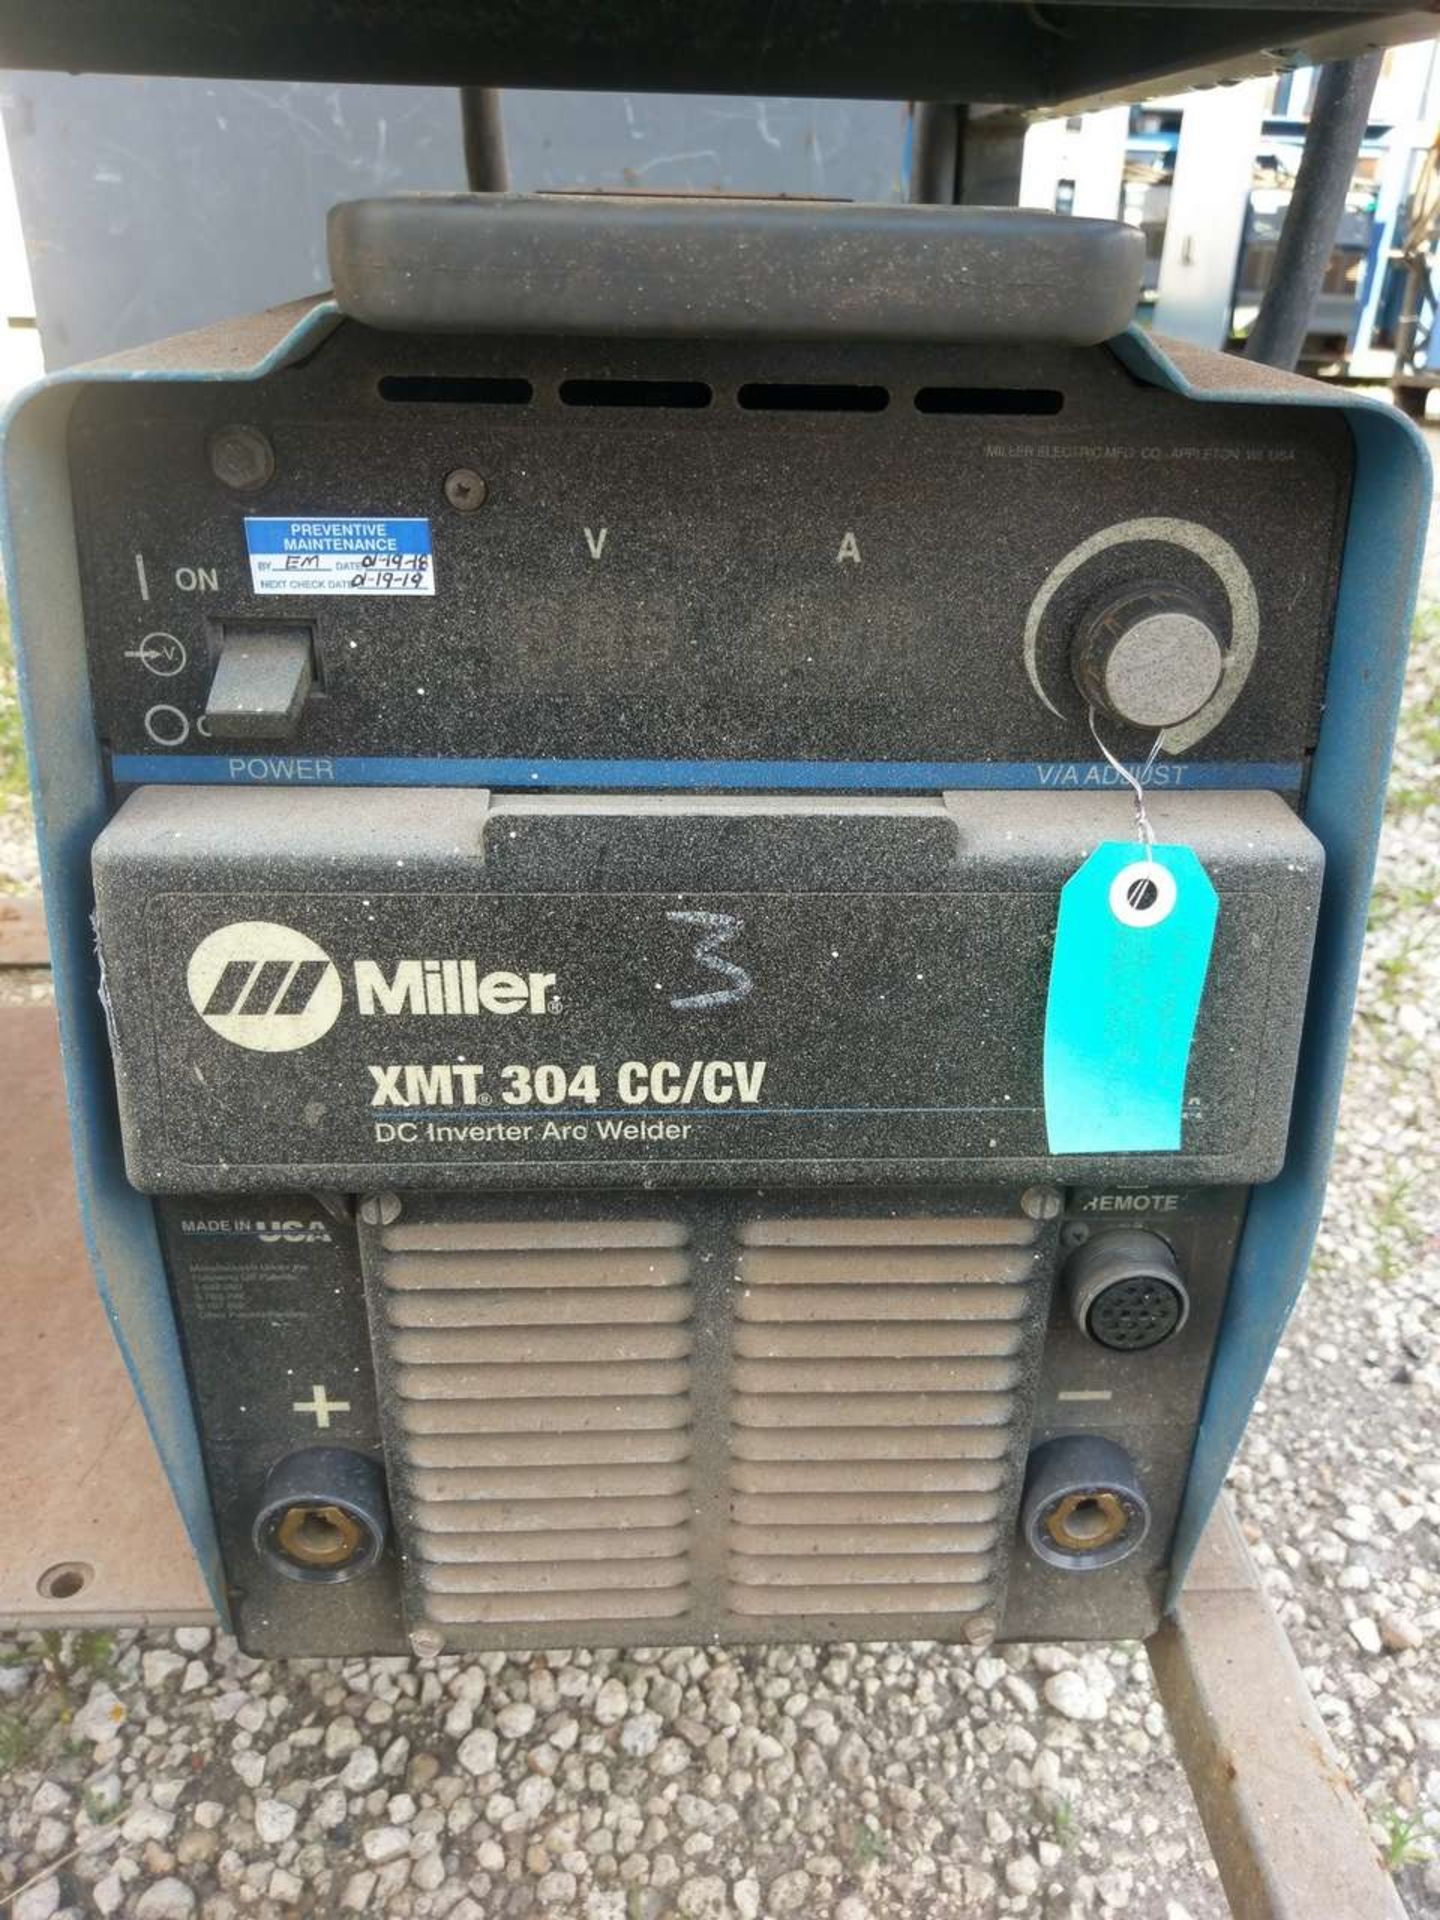 Miller XMT 304 CC/CV (4) DC Inverter Arc Welder - Image 15 of 19